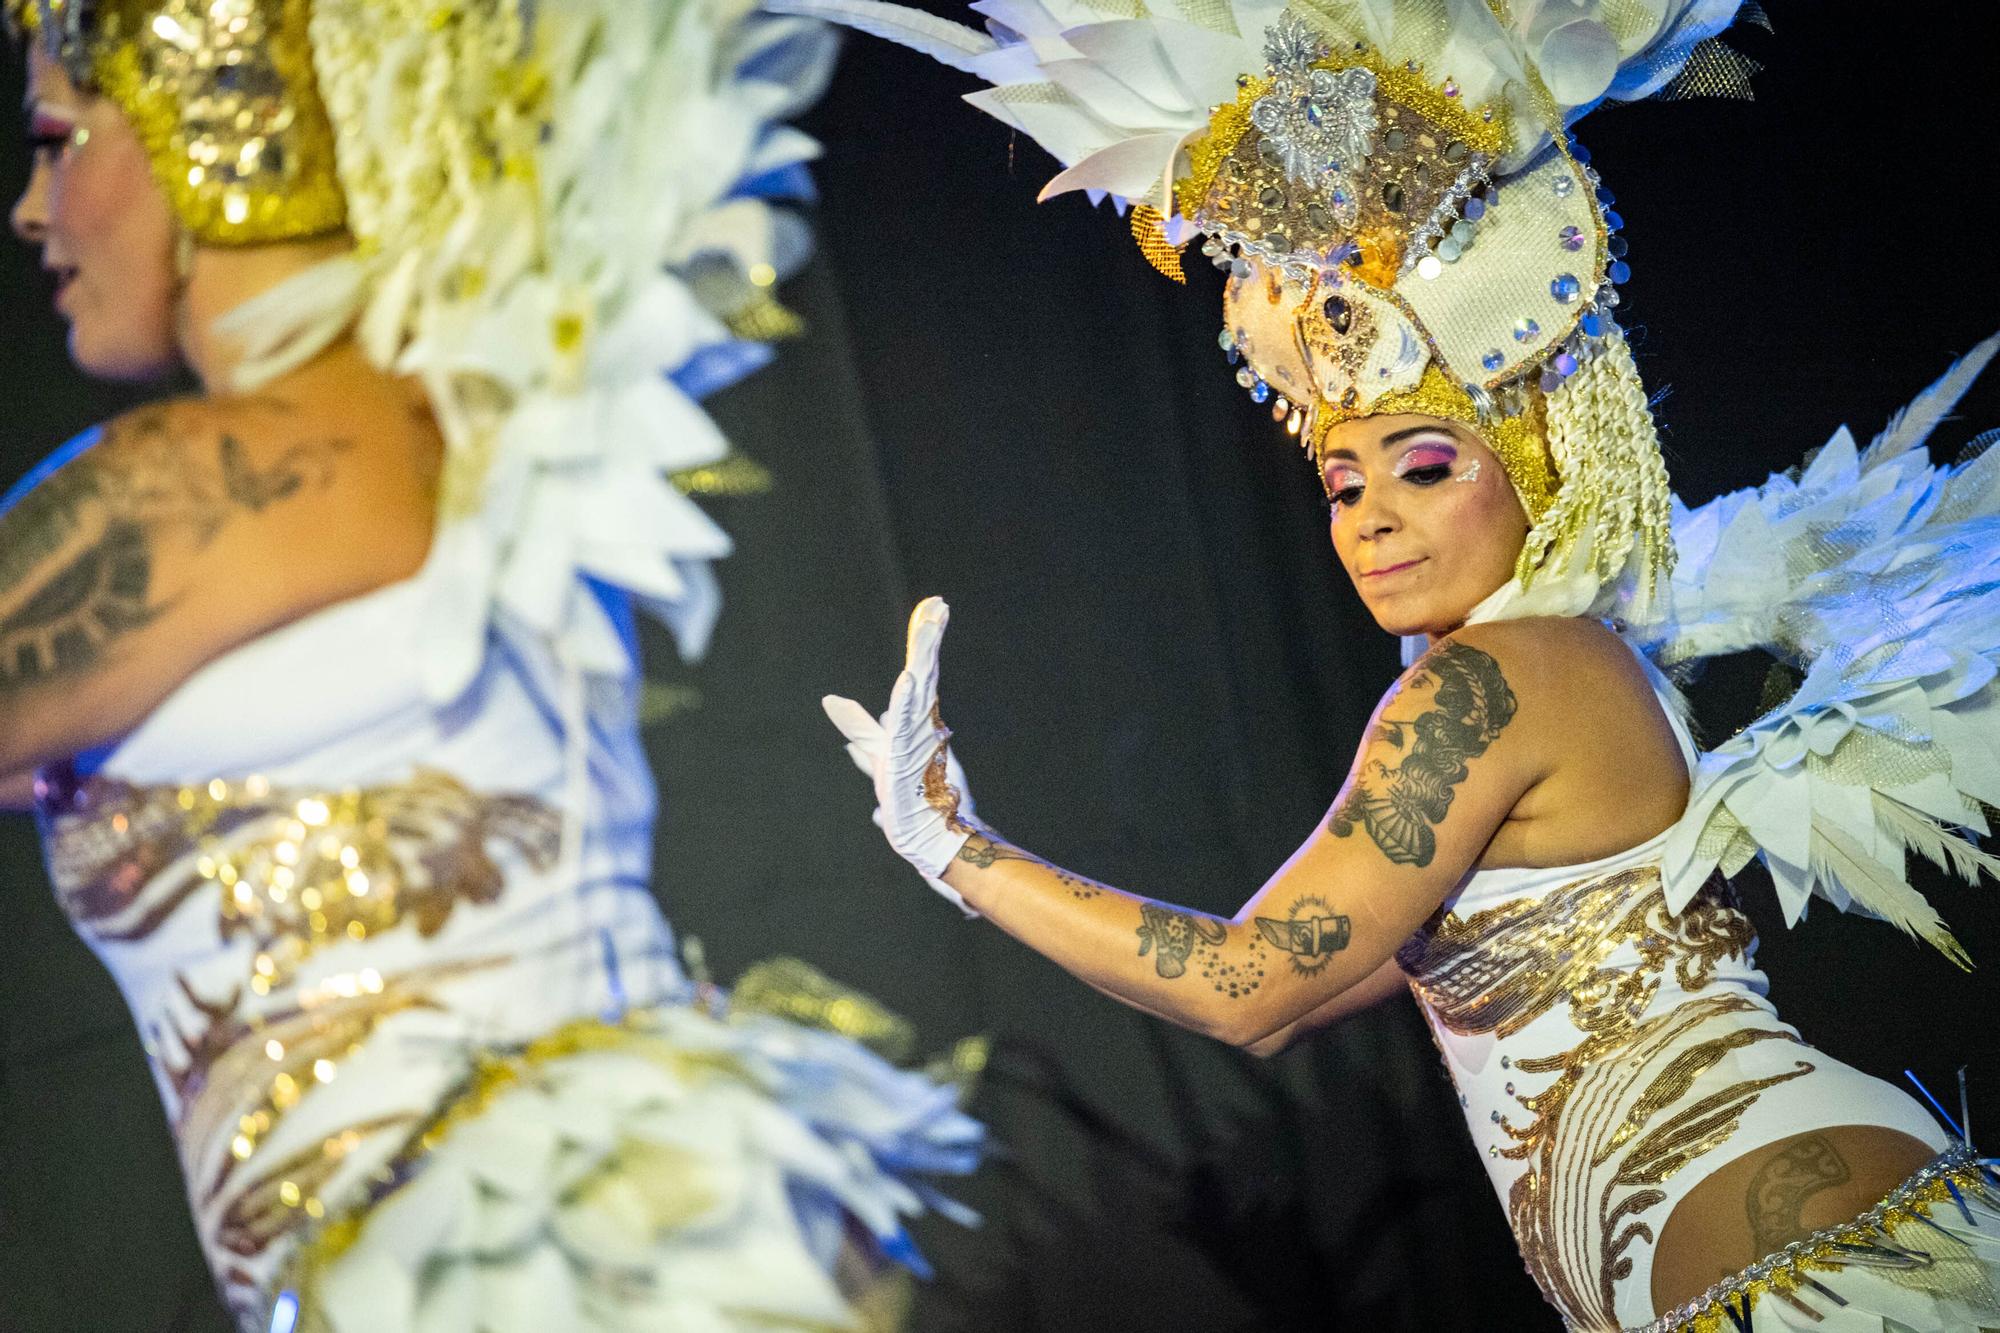 Concurso de comparsas del Carnaval de Santa Cruz de Tenerife